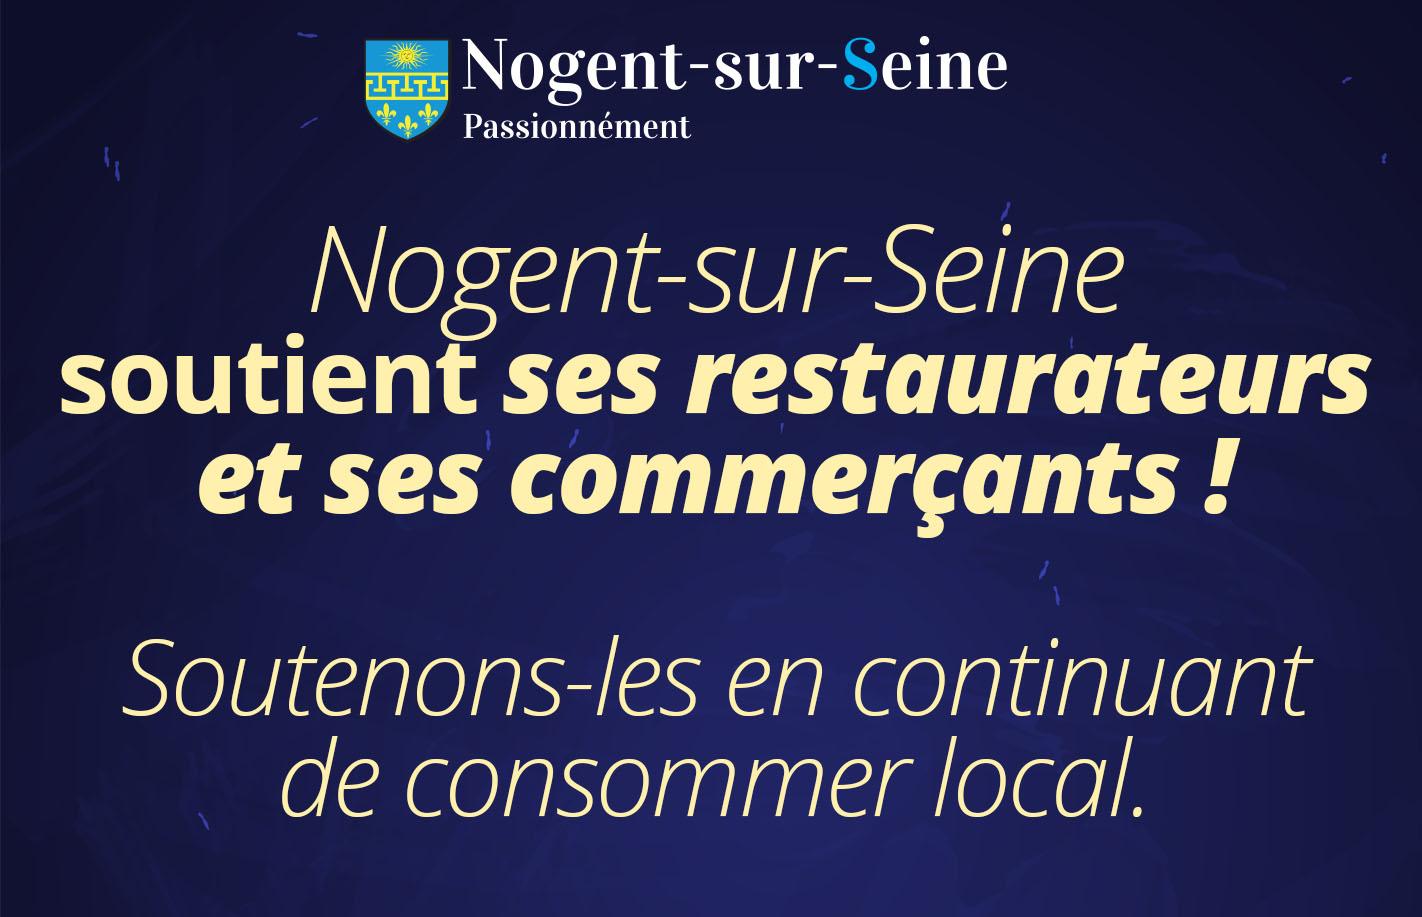 Nogent-sur-Seine soutient ses restaurateurs et ses commerçants !